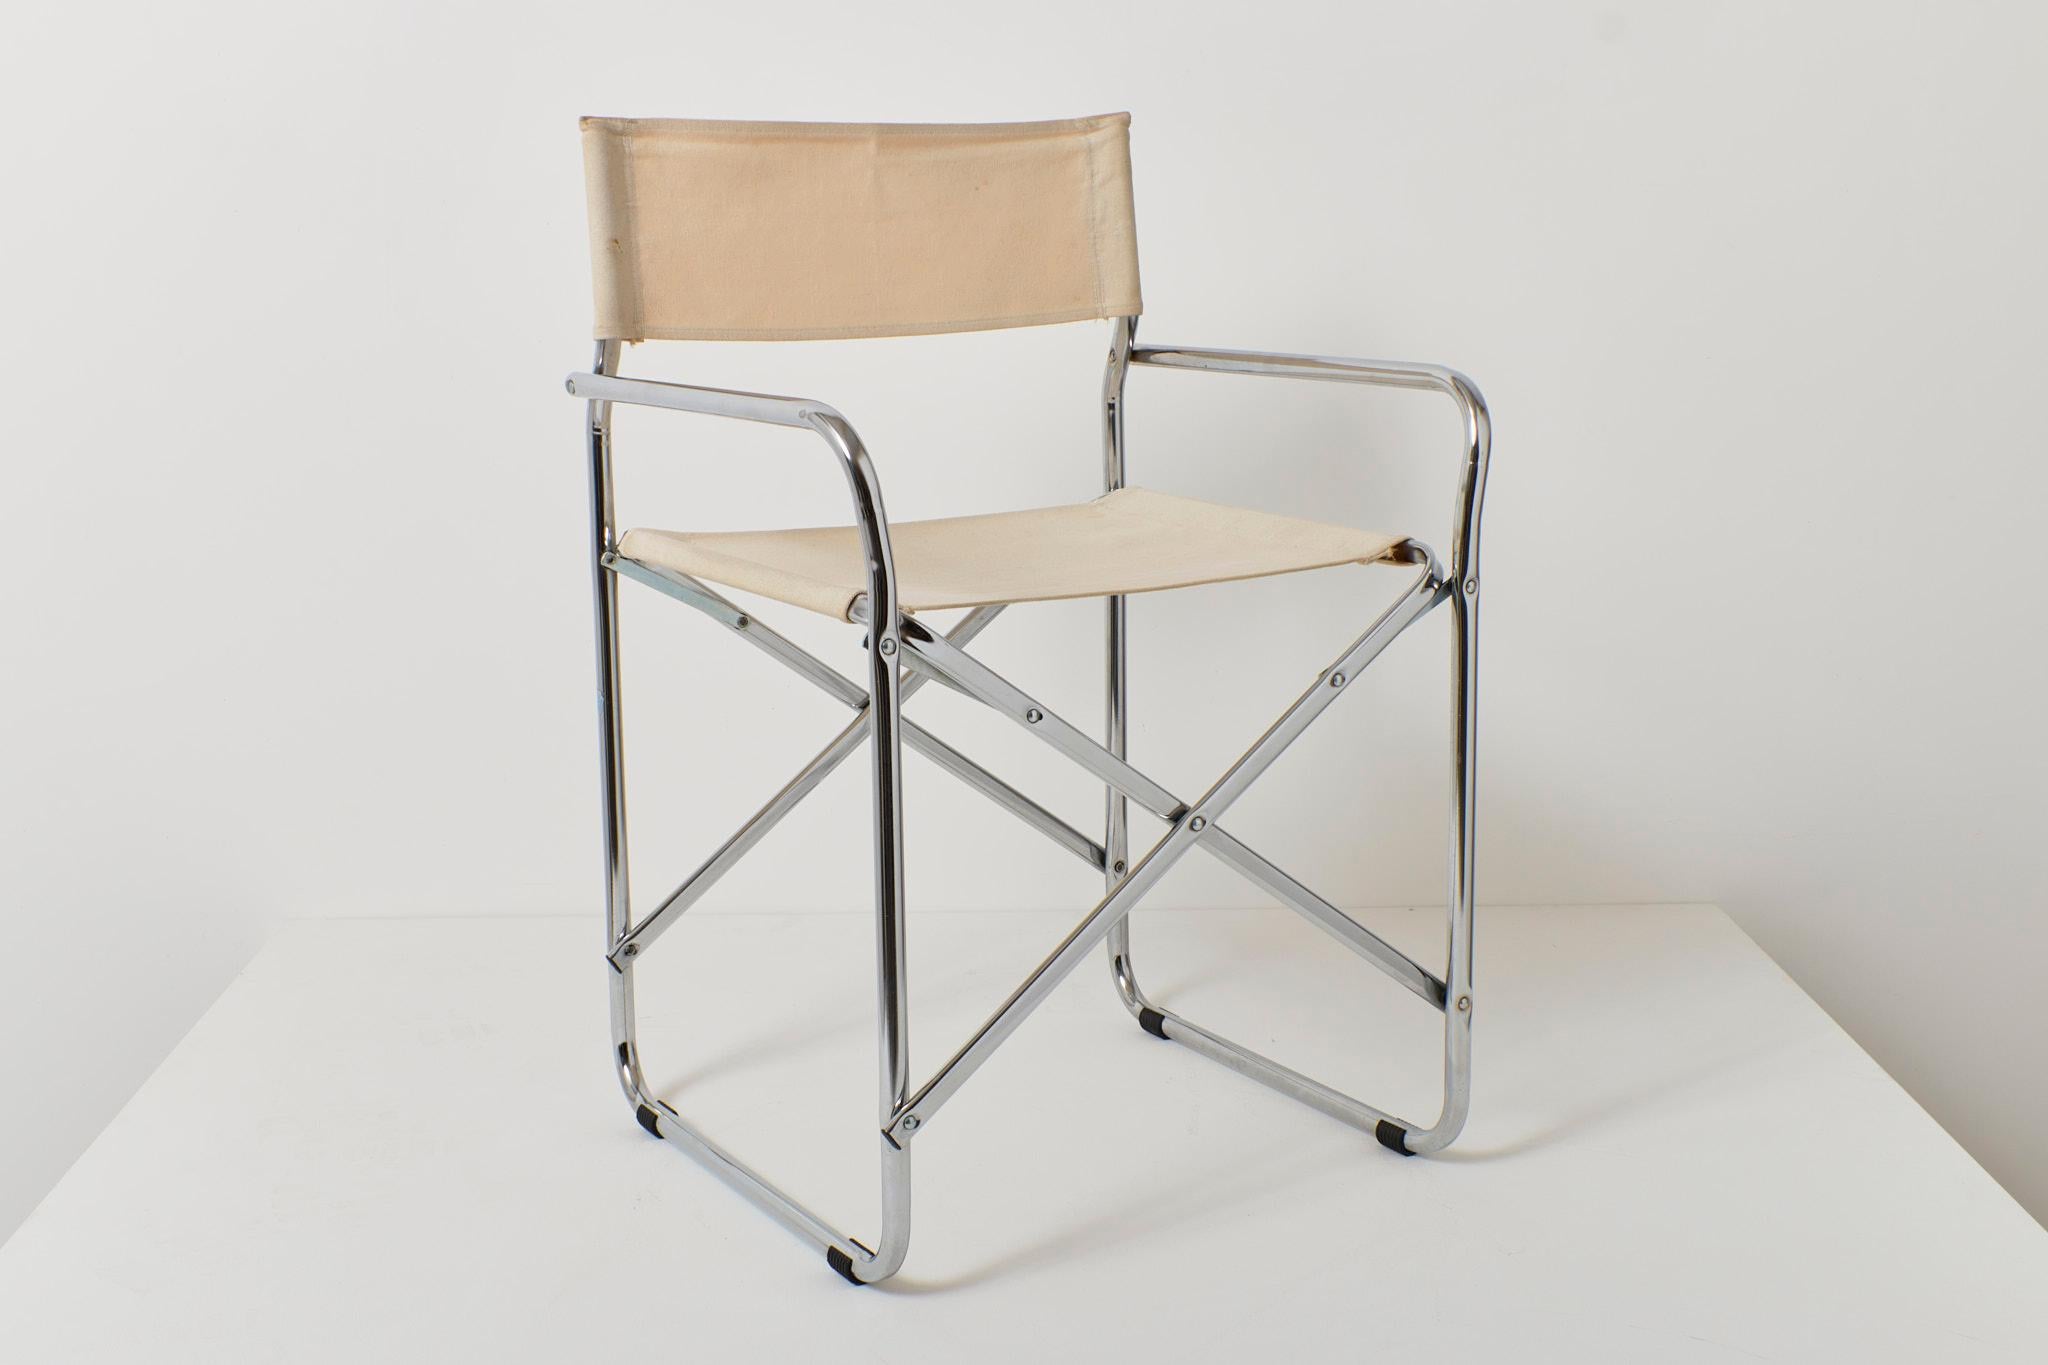 Italienischer Klappstuhl mit Sitz aus Segeltuch auf einem verchromten Gestell, hergestellt von Grazioli Giocattoli. CIRCA 1970er Jahre. Das Design ist dem Klappstuhl von Gae Aulenti für Zanotta sehr ähnlich.

Der Zustand ist gut mit geringen